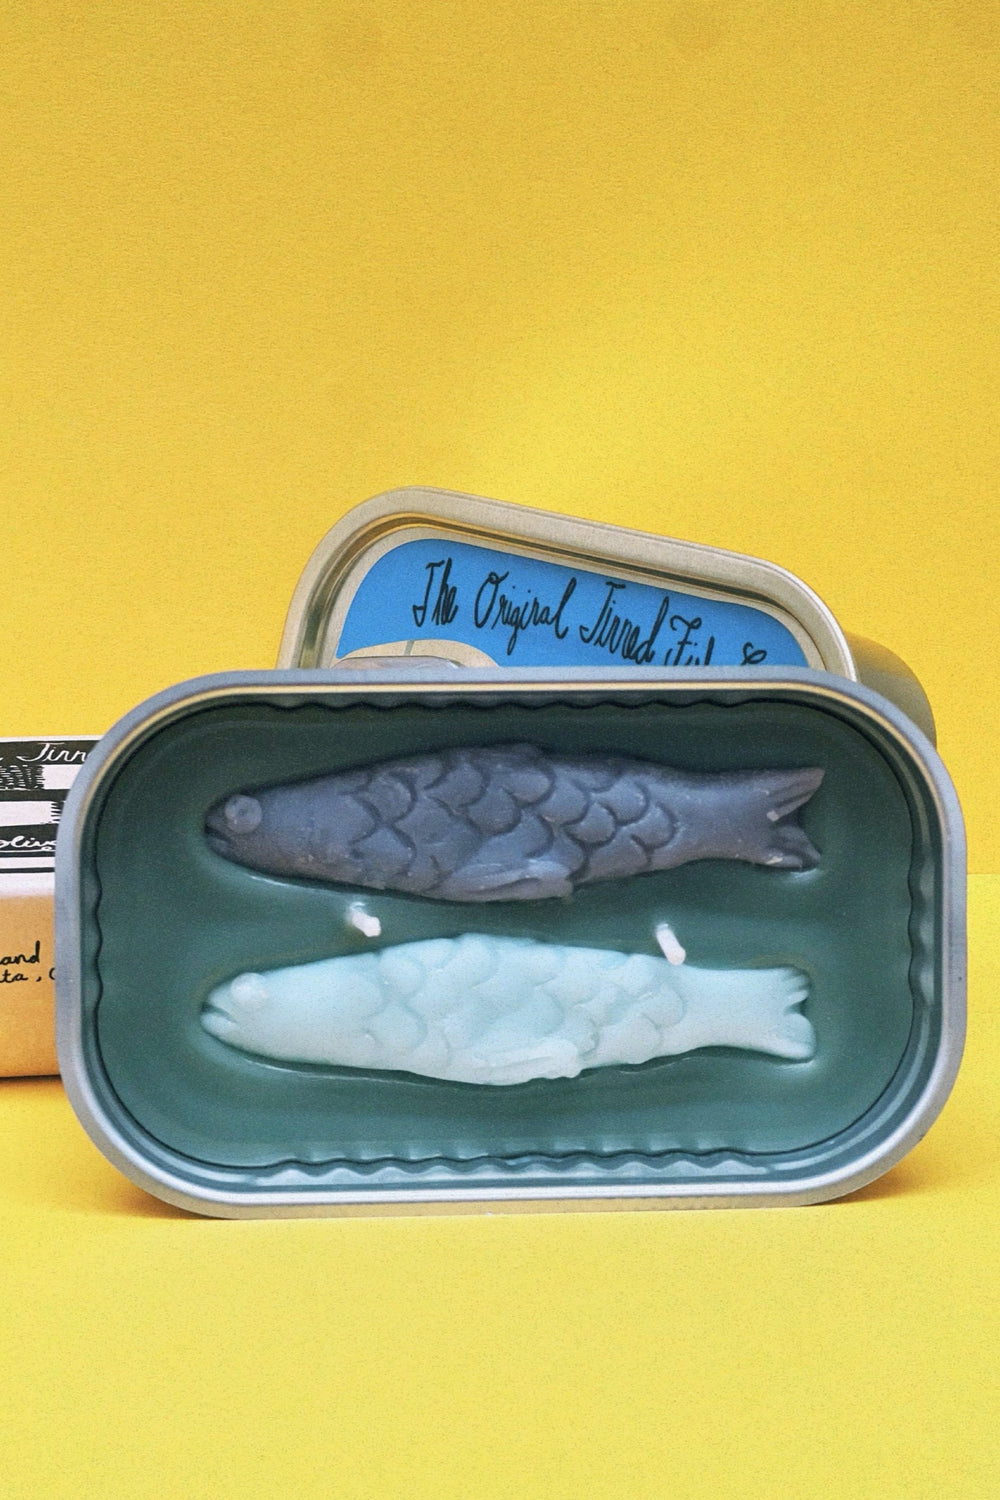 Olive Oil & Sea Salt Tinned Fish Candle